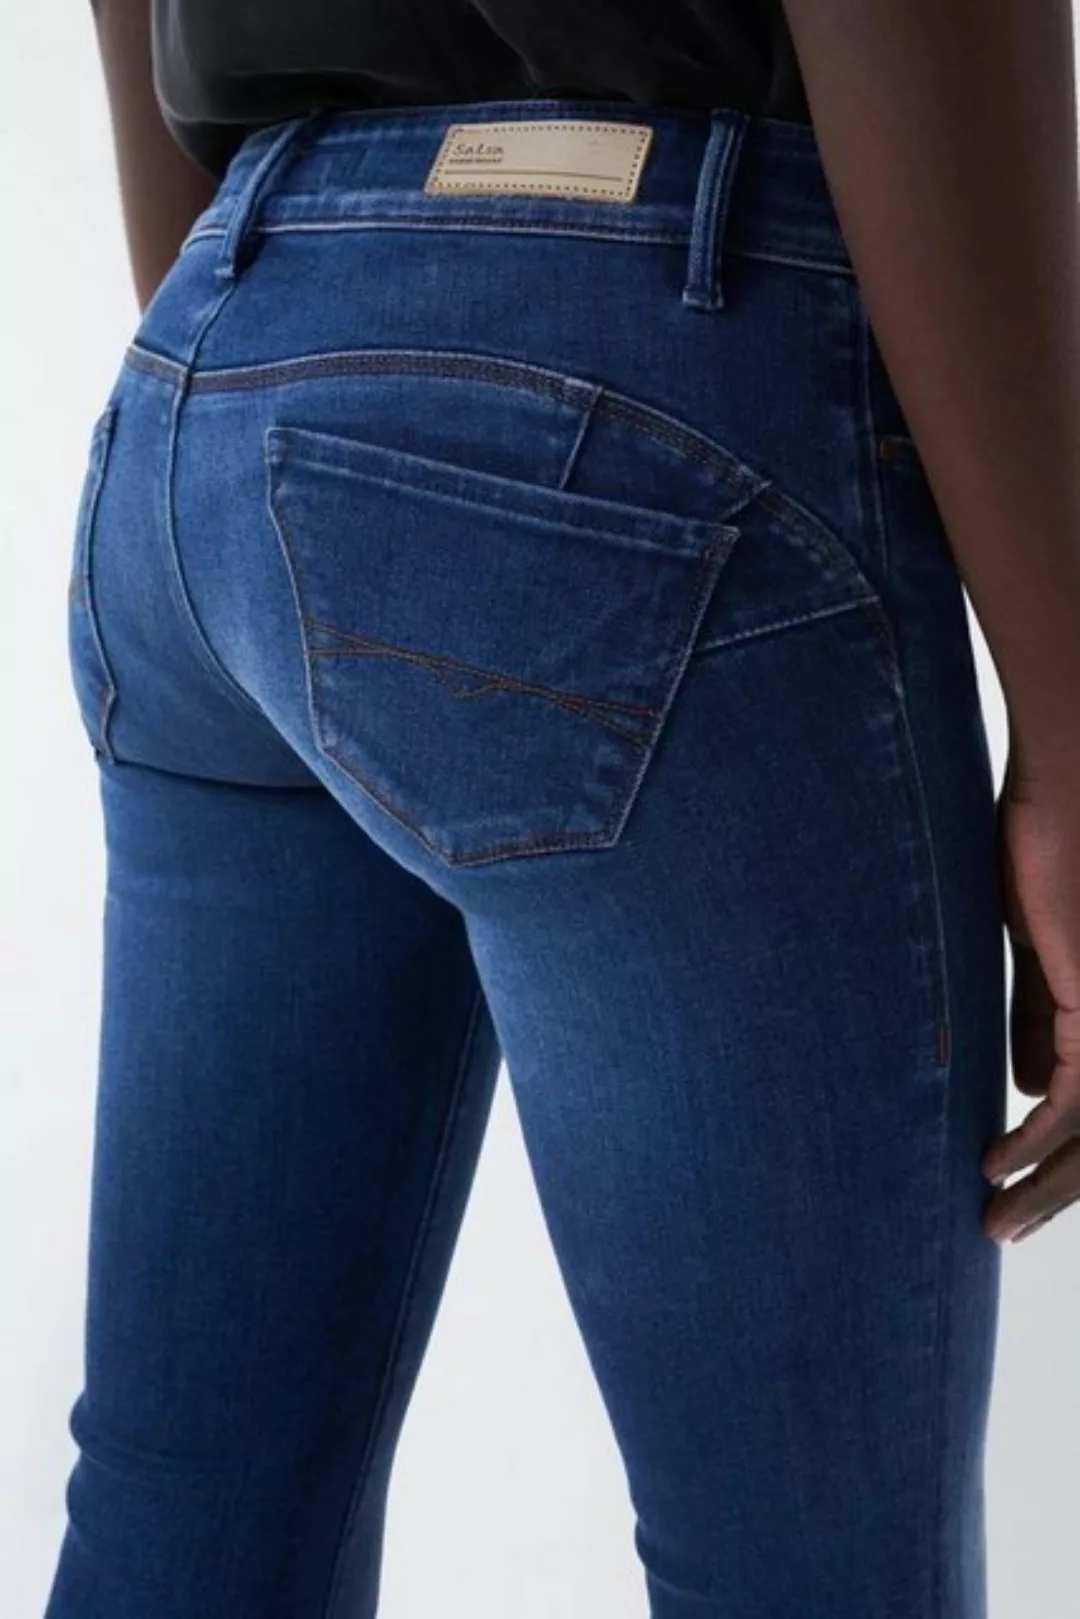 Salsa Jeans Wonder Push Up Flare In Dark Jeans 29 Blue günstig online kaufen